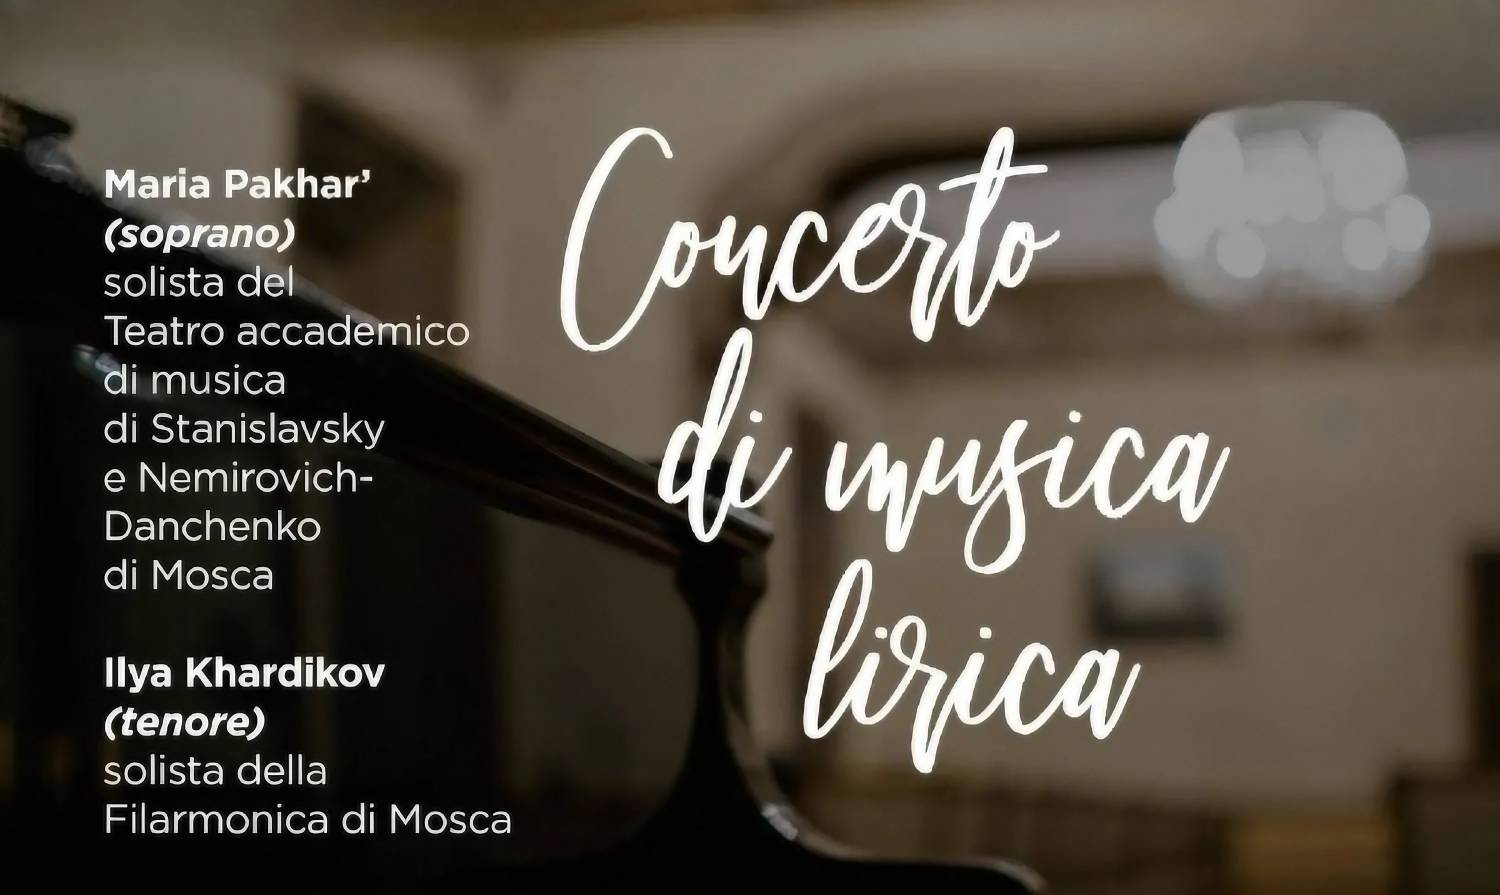 Il 150° anniversario della nascita di Sergei Diaghilev si concluderà con un concerto di musica lirica presso la Casa Russa a Roma